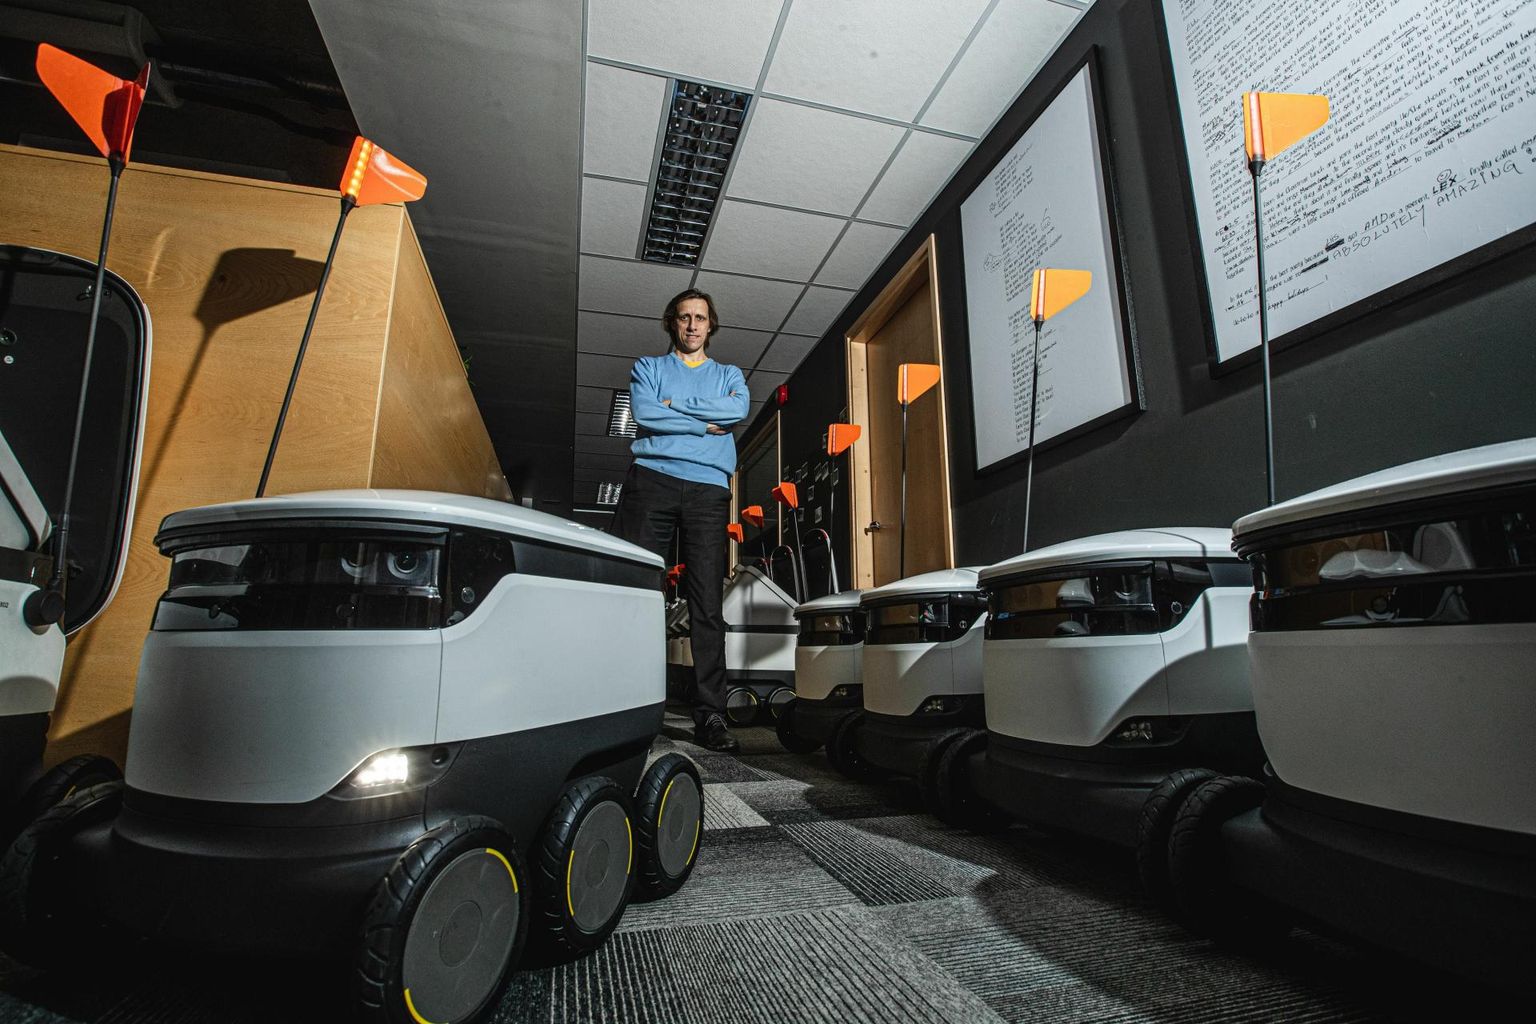 Starship Technologiesi looja ja juhi Ahti Heinla sõnul on nende pakirobotid arenenud mitu korda efektiivsemaks.